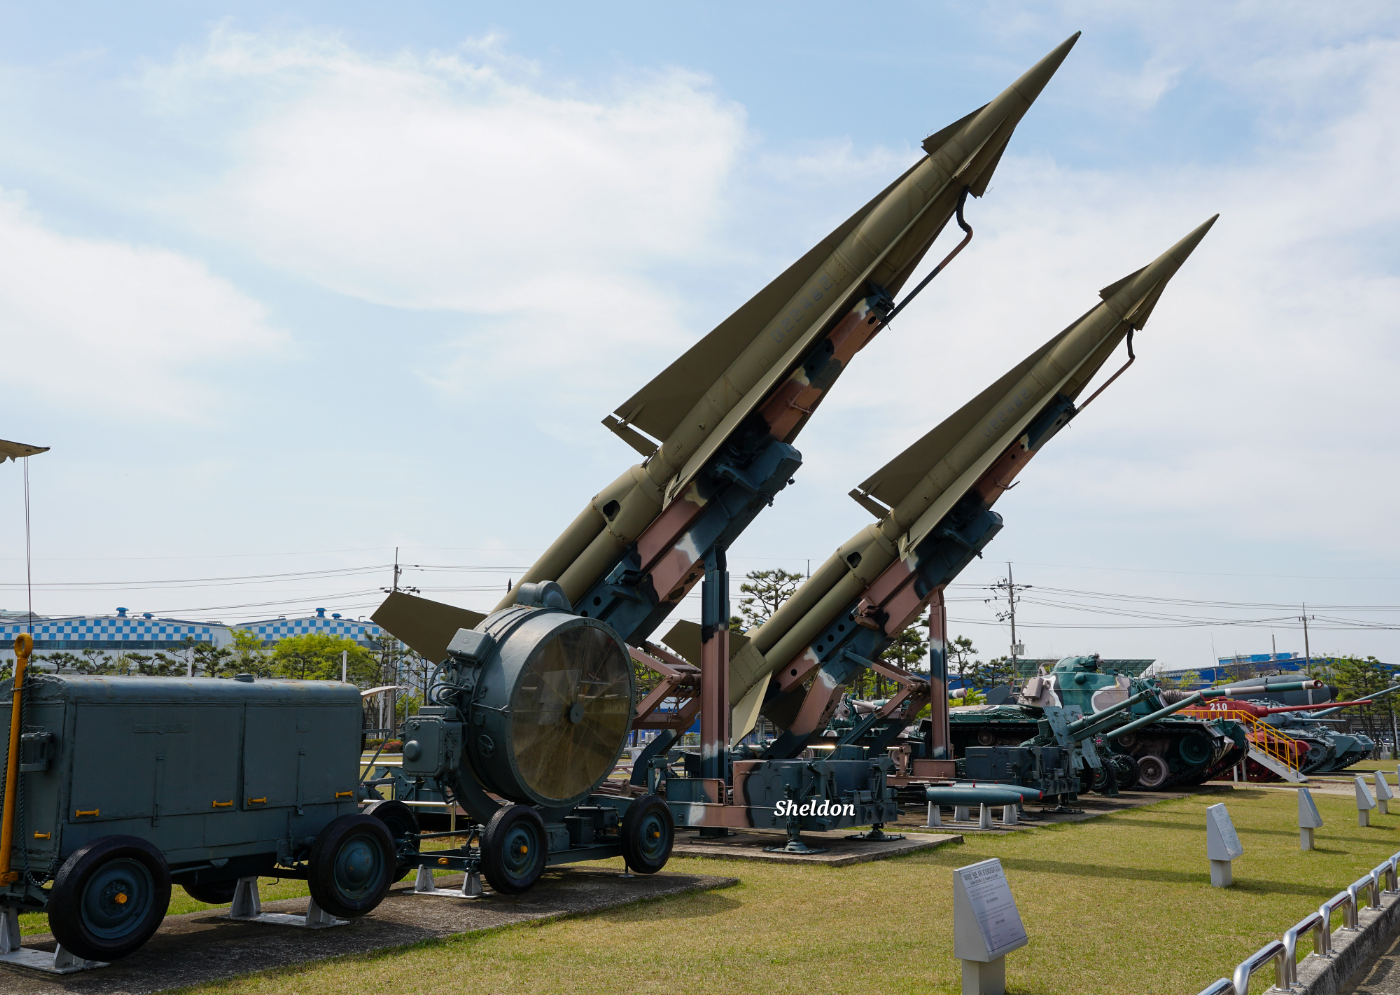 MIM-14 나이키 허큘리스. 국내에는 1965년 도입되었으며 2014년 퇴역했다. 전시된 장비는 2013년 3월 15일 한국 공군으로부터 제공받았다고 한다.